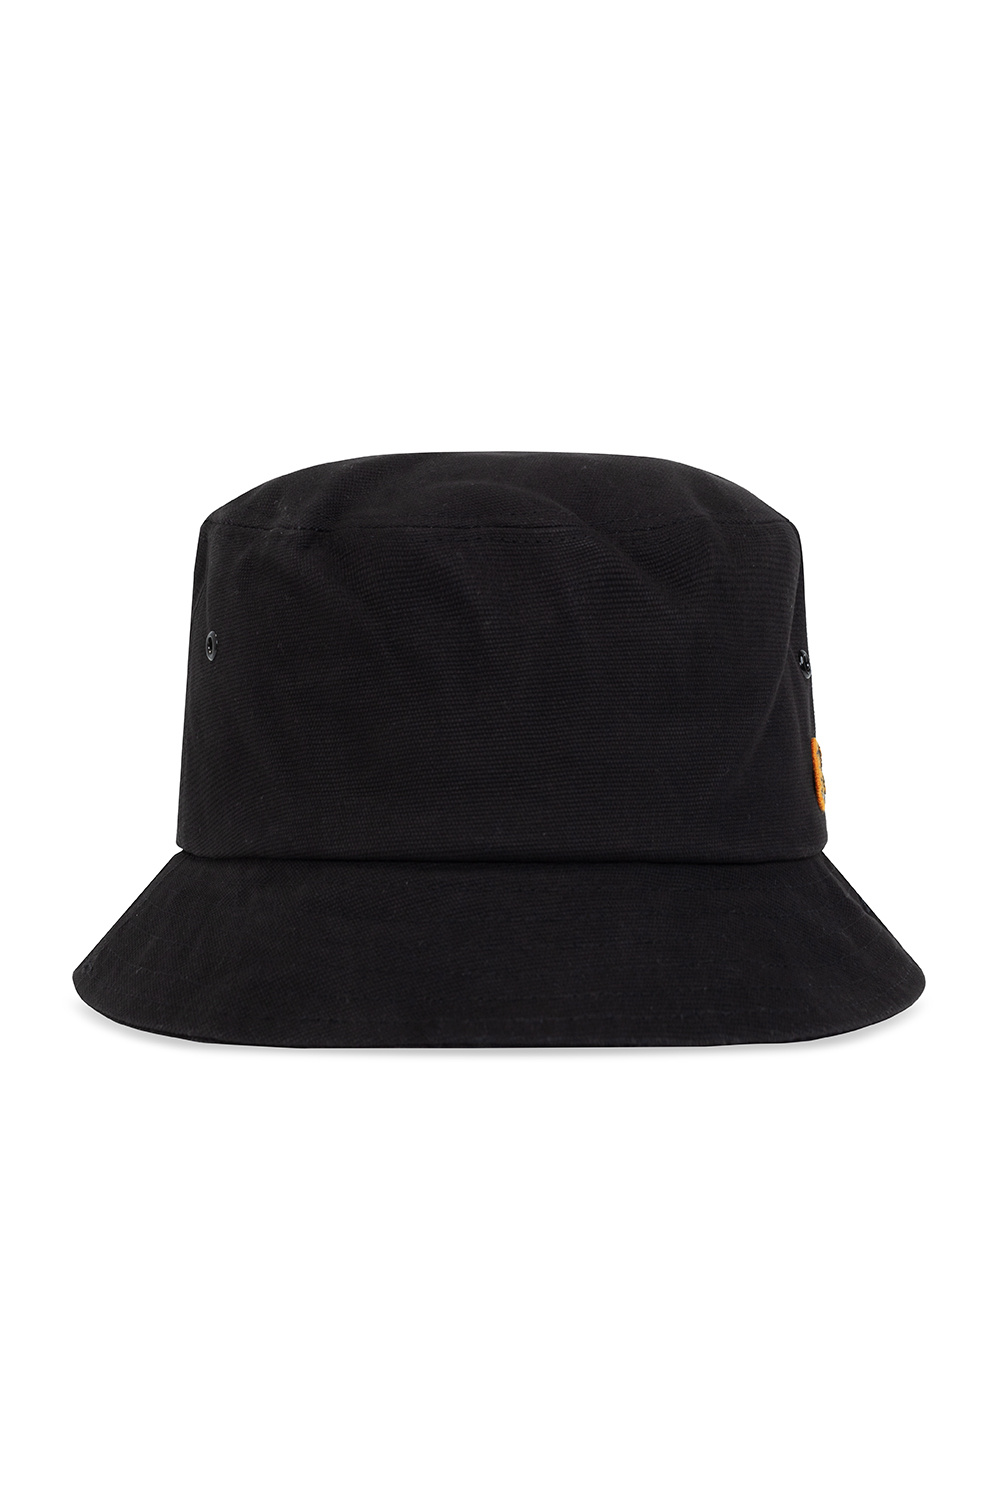 Kenzo Patched bucket hat | Men's Accessories | Vitkac